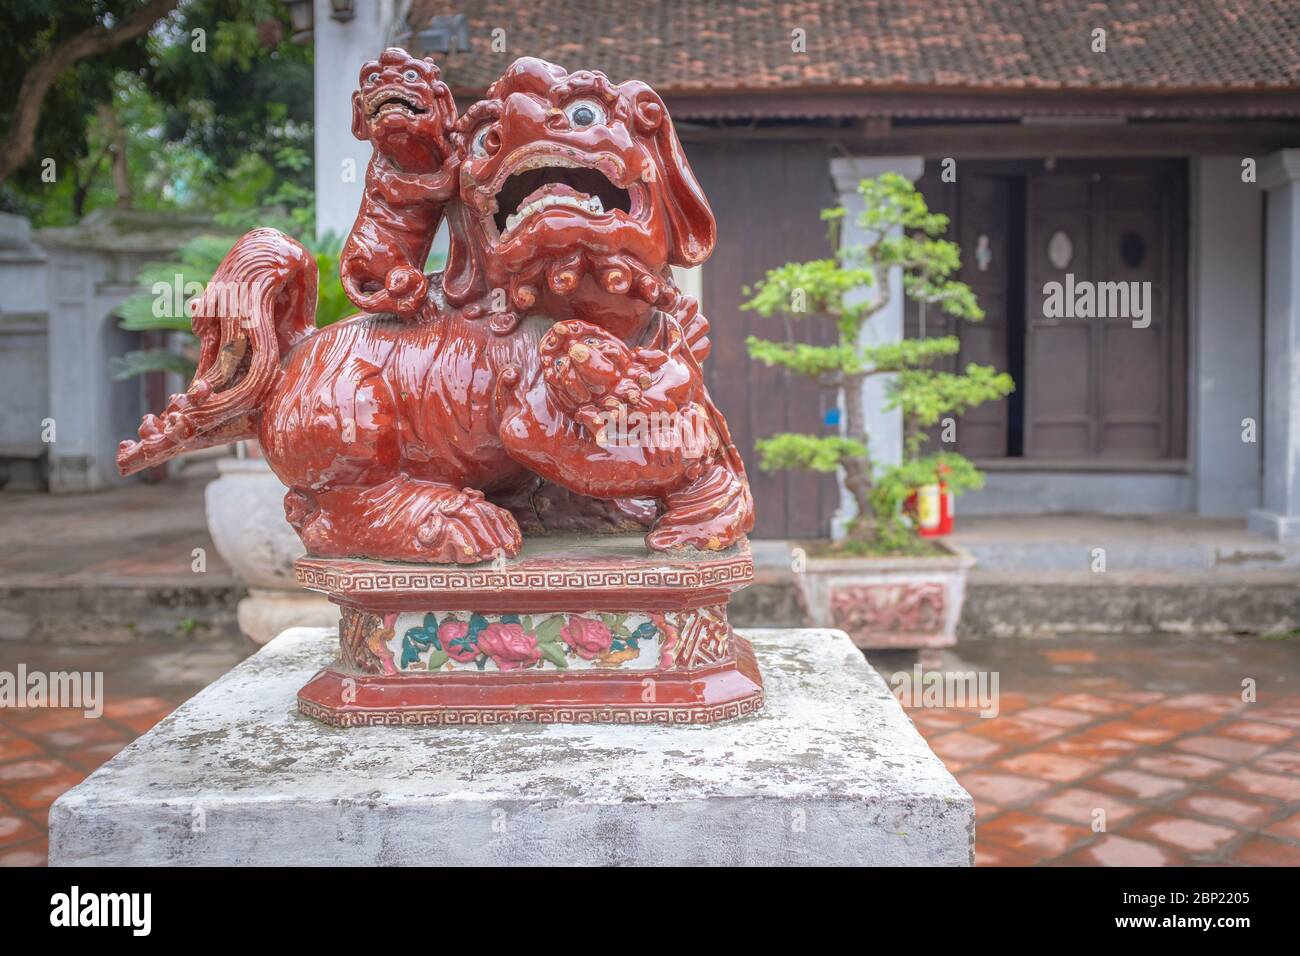 Lion asiatique traditionnel en porcelaine rouge, pris dans un parc de la ville avec des bonsaïs en arrière-plan, Hanoi, Vietnam Banque D'Images